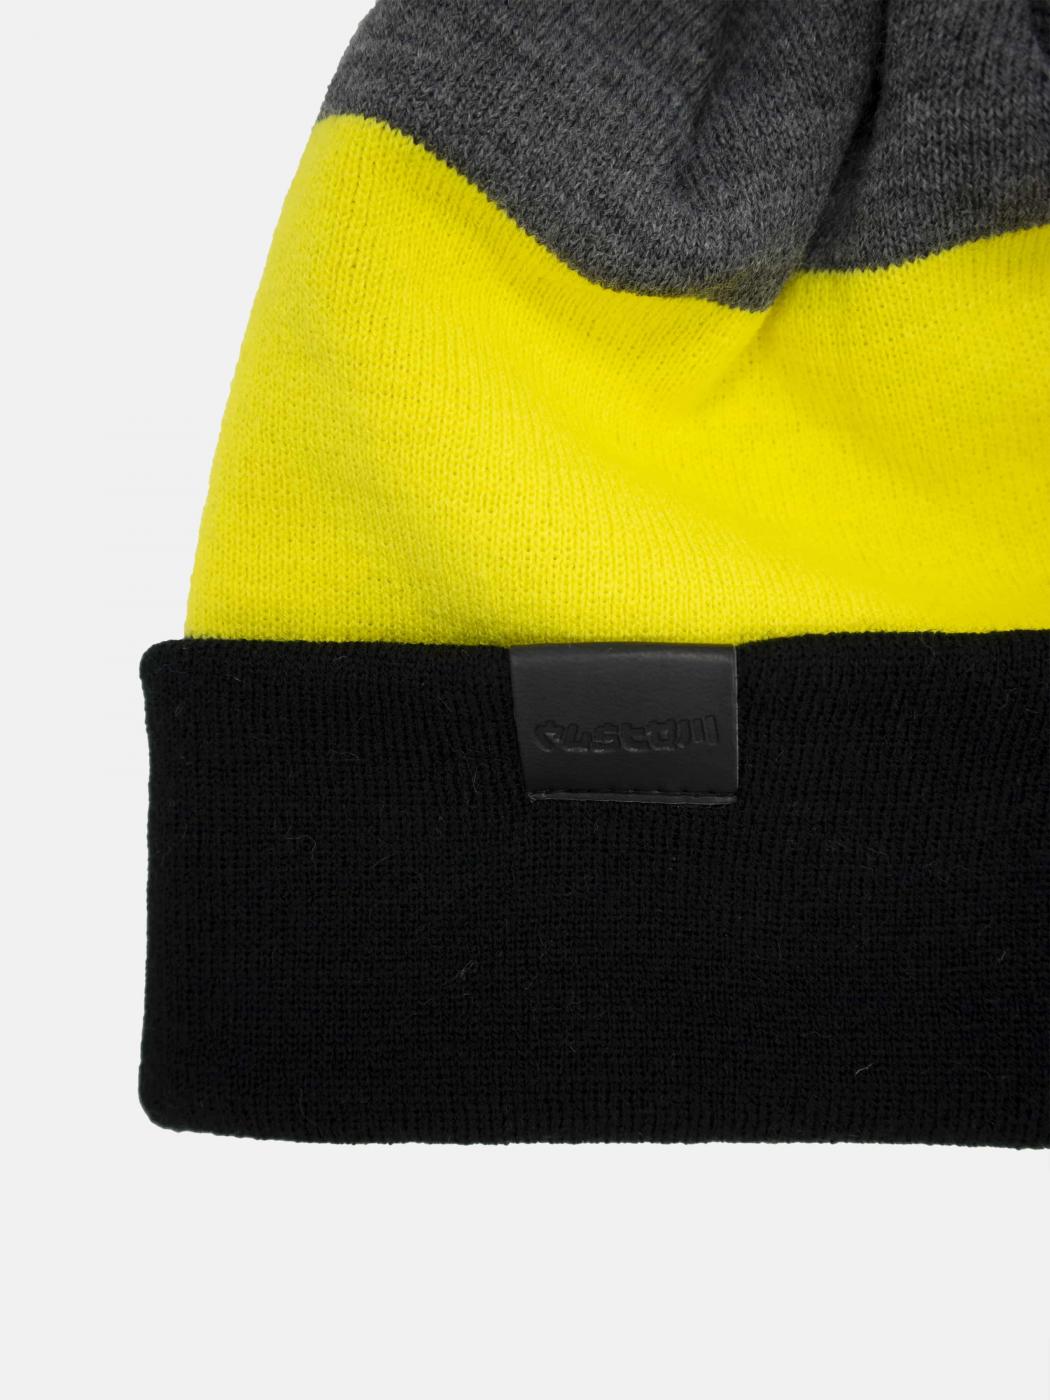 Шапка Custom Wear Tricolor із бумбоном графіт із жовтим, чорним  - Фото 5